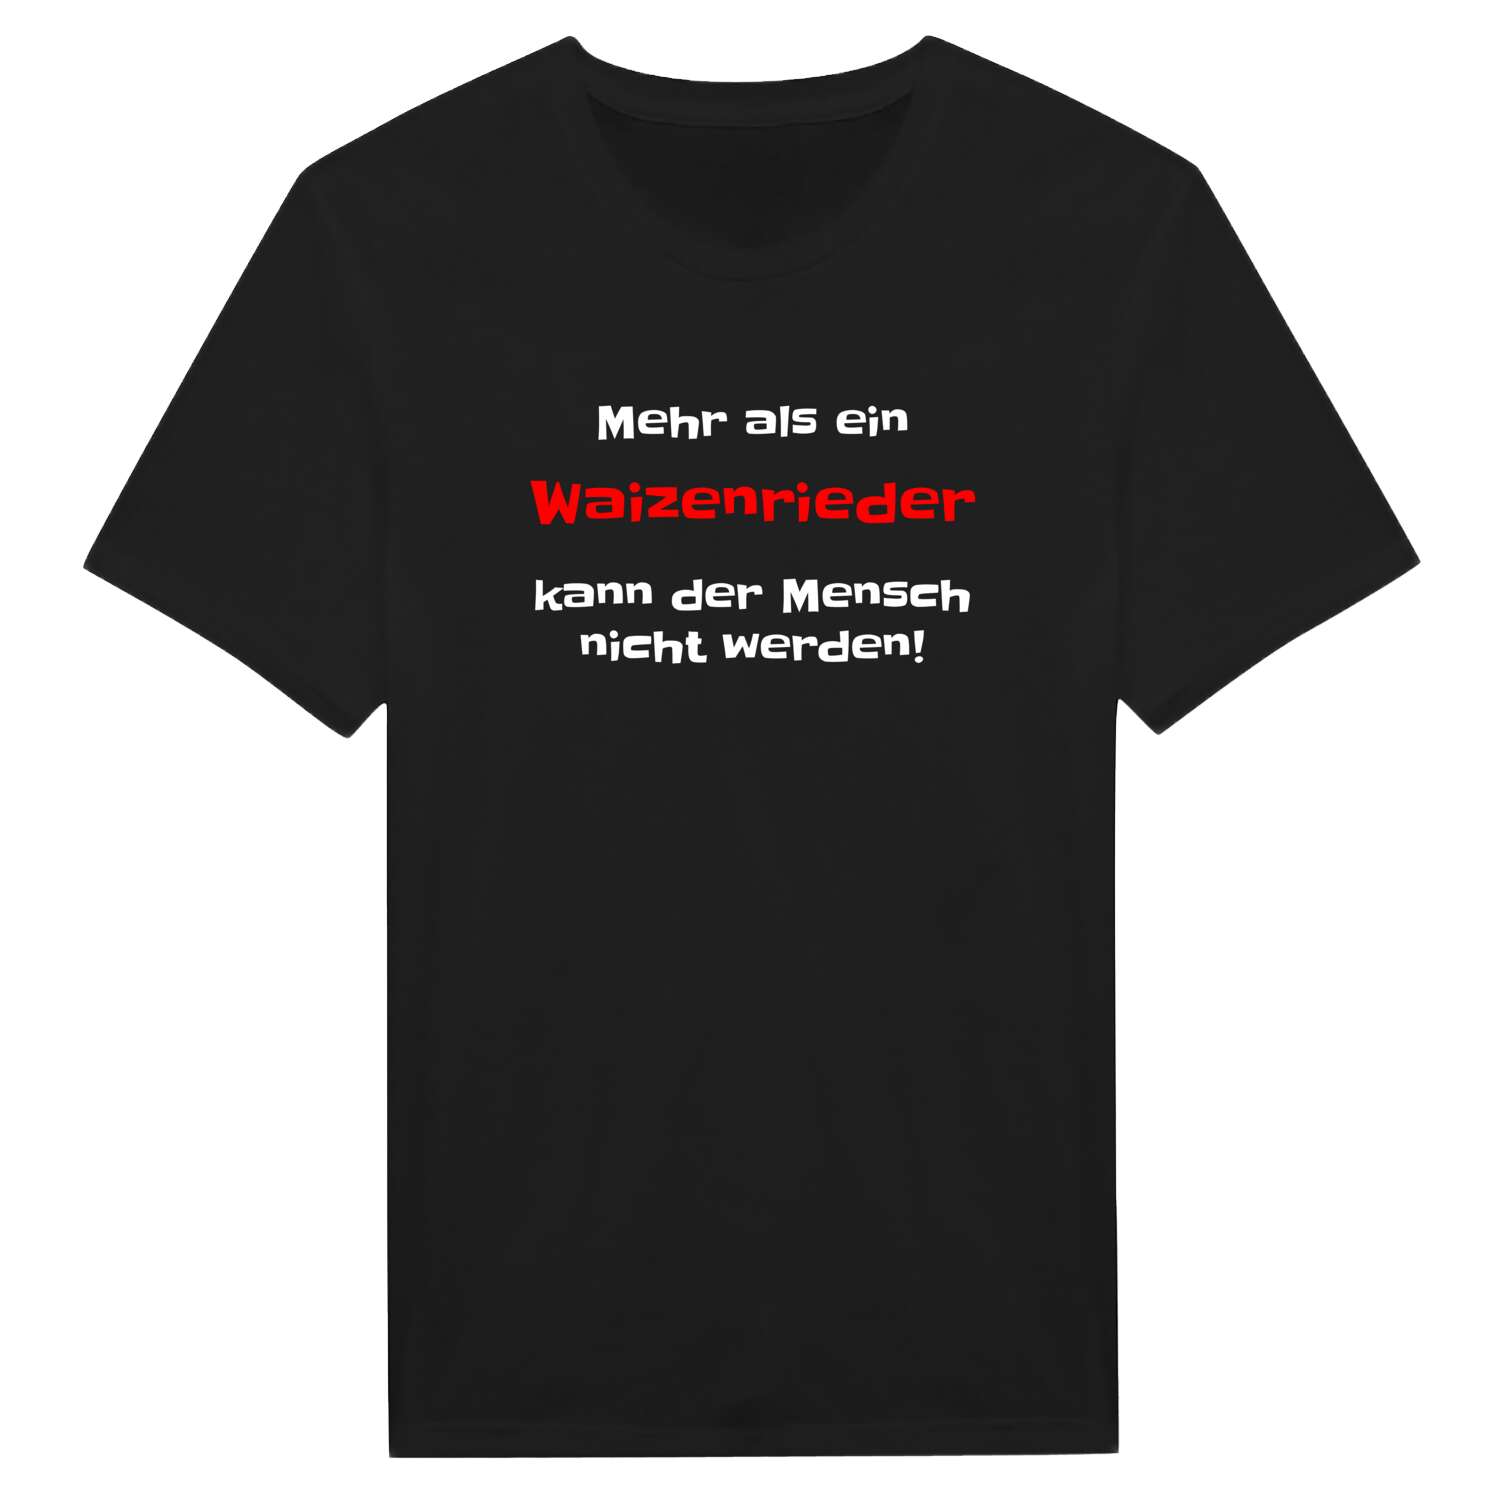 Waizenried T-Shirt »Mehr als ein«